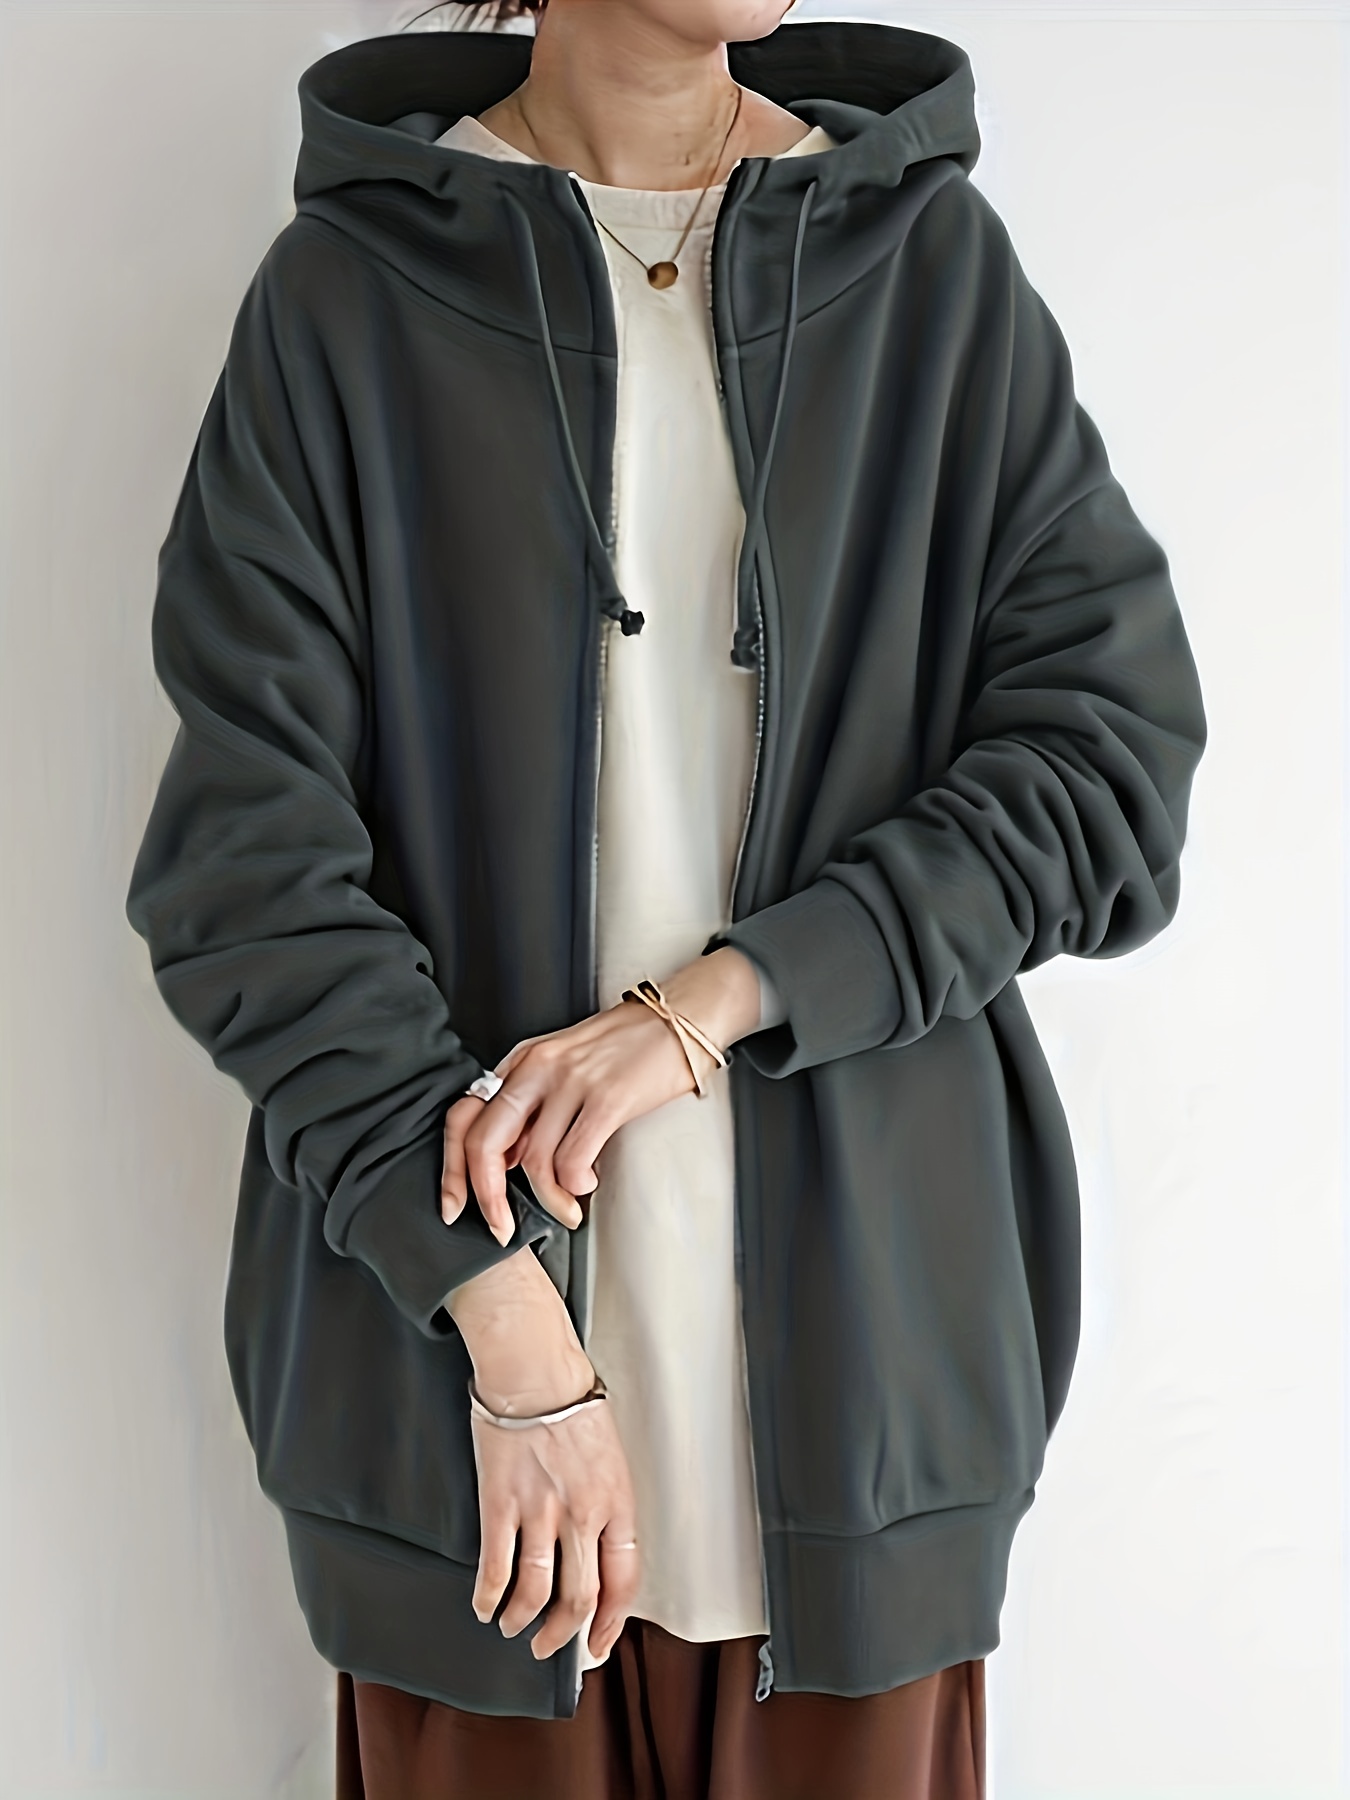 Sudadera gris con cremallera para mujer, chaqueta con capucha de